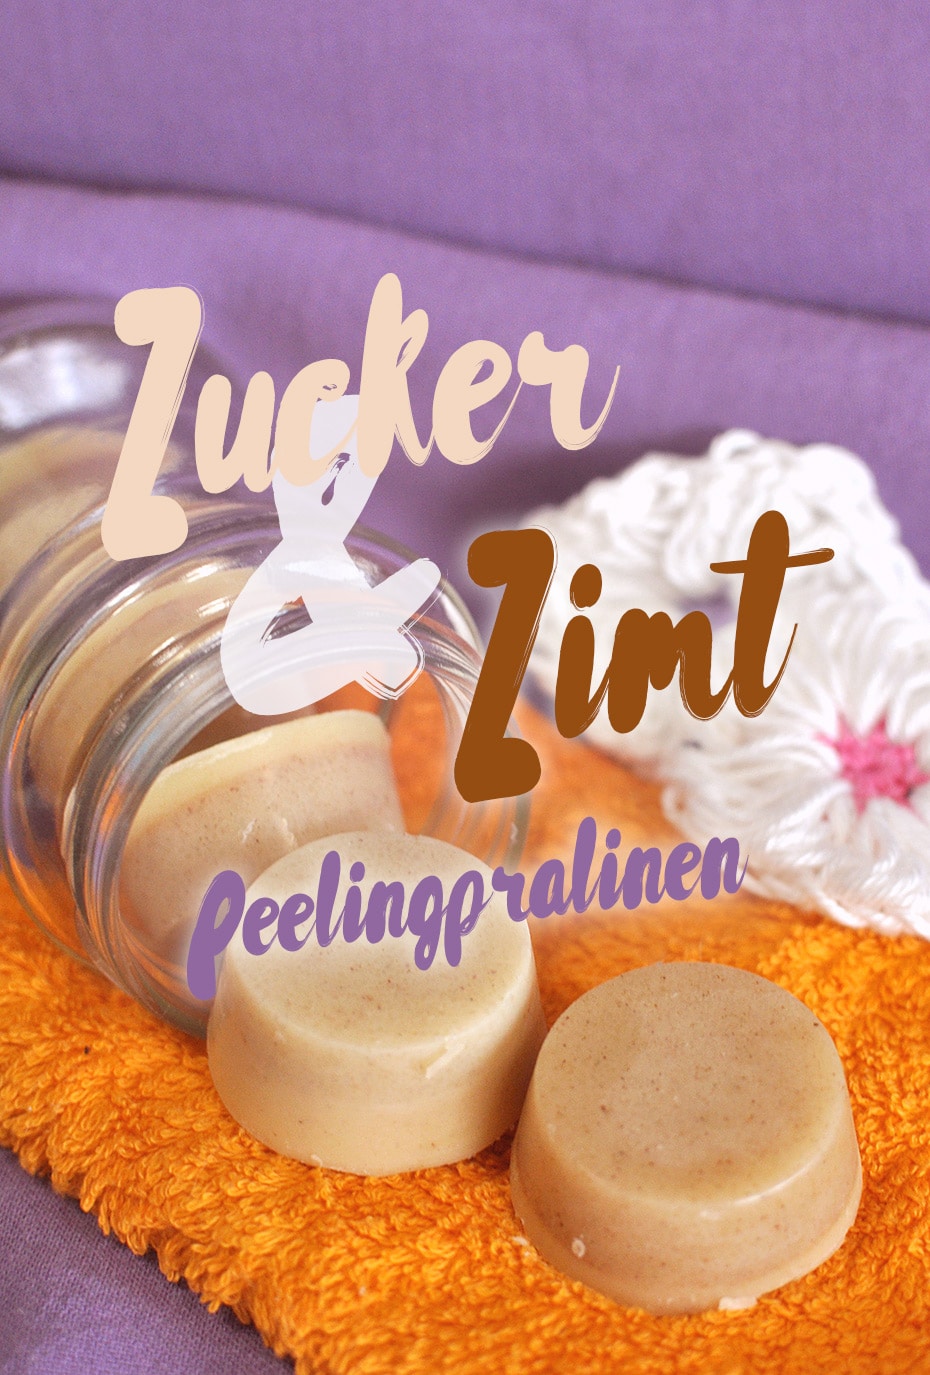 Zucker & Zimt Peelingpralinen | Schwatz Katz